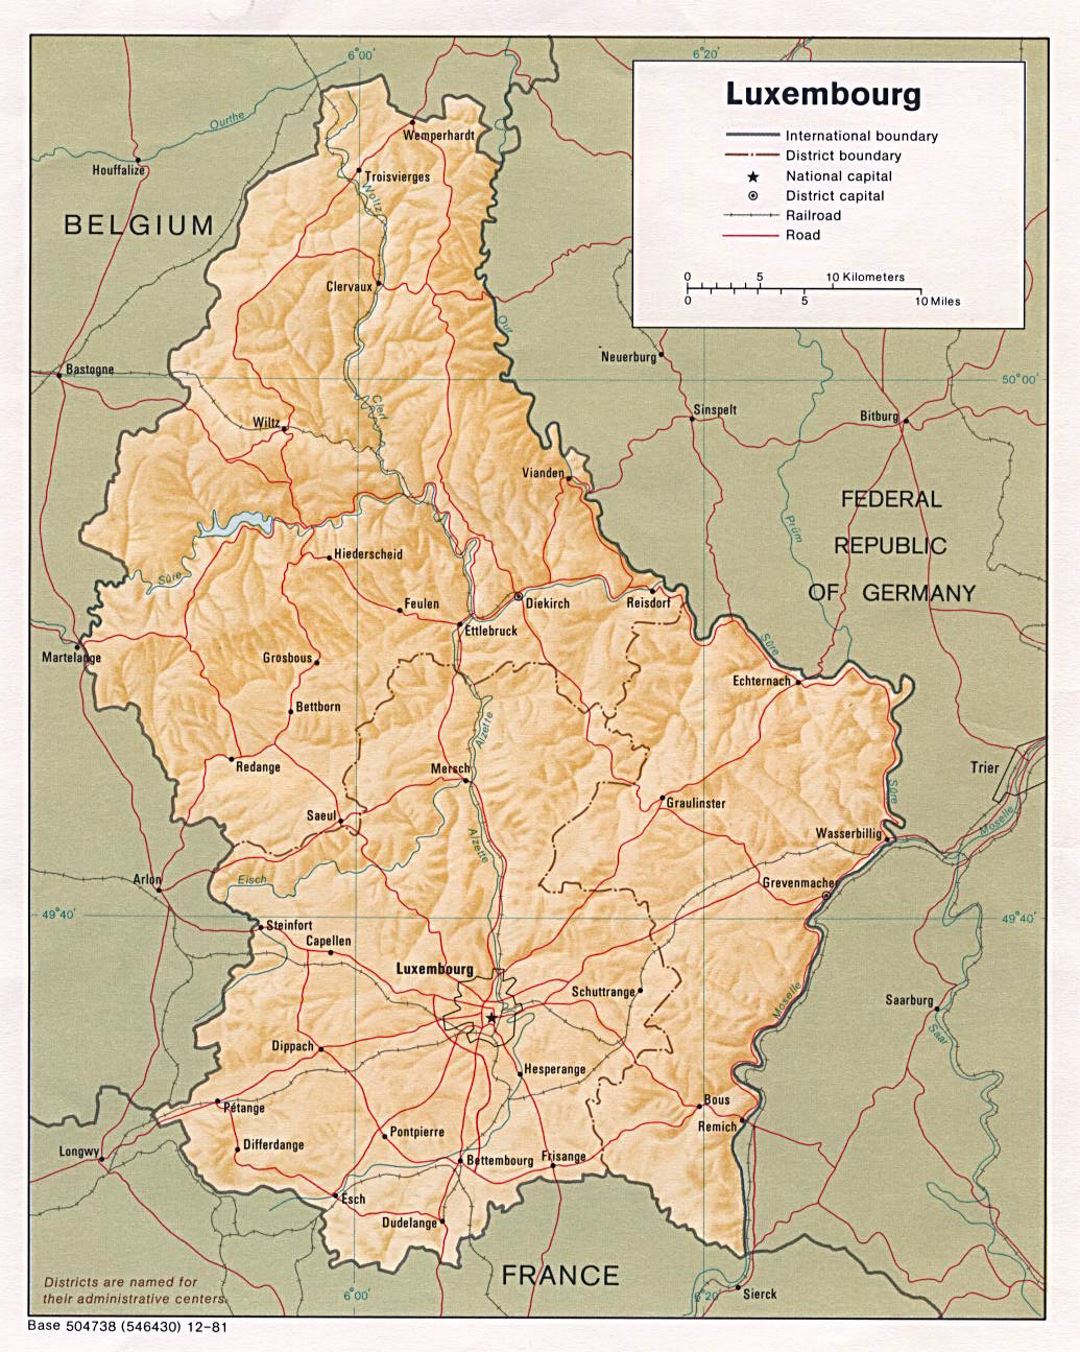 Detallado mapa político y administrativo de Luxemburgo con alivio, carreteras, vías férreas y principales ciudades - 1981